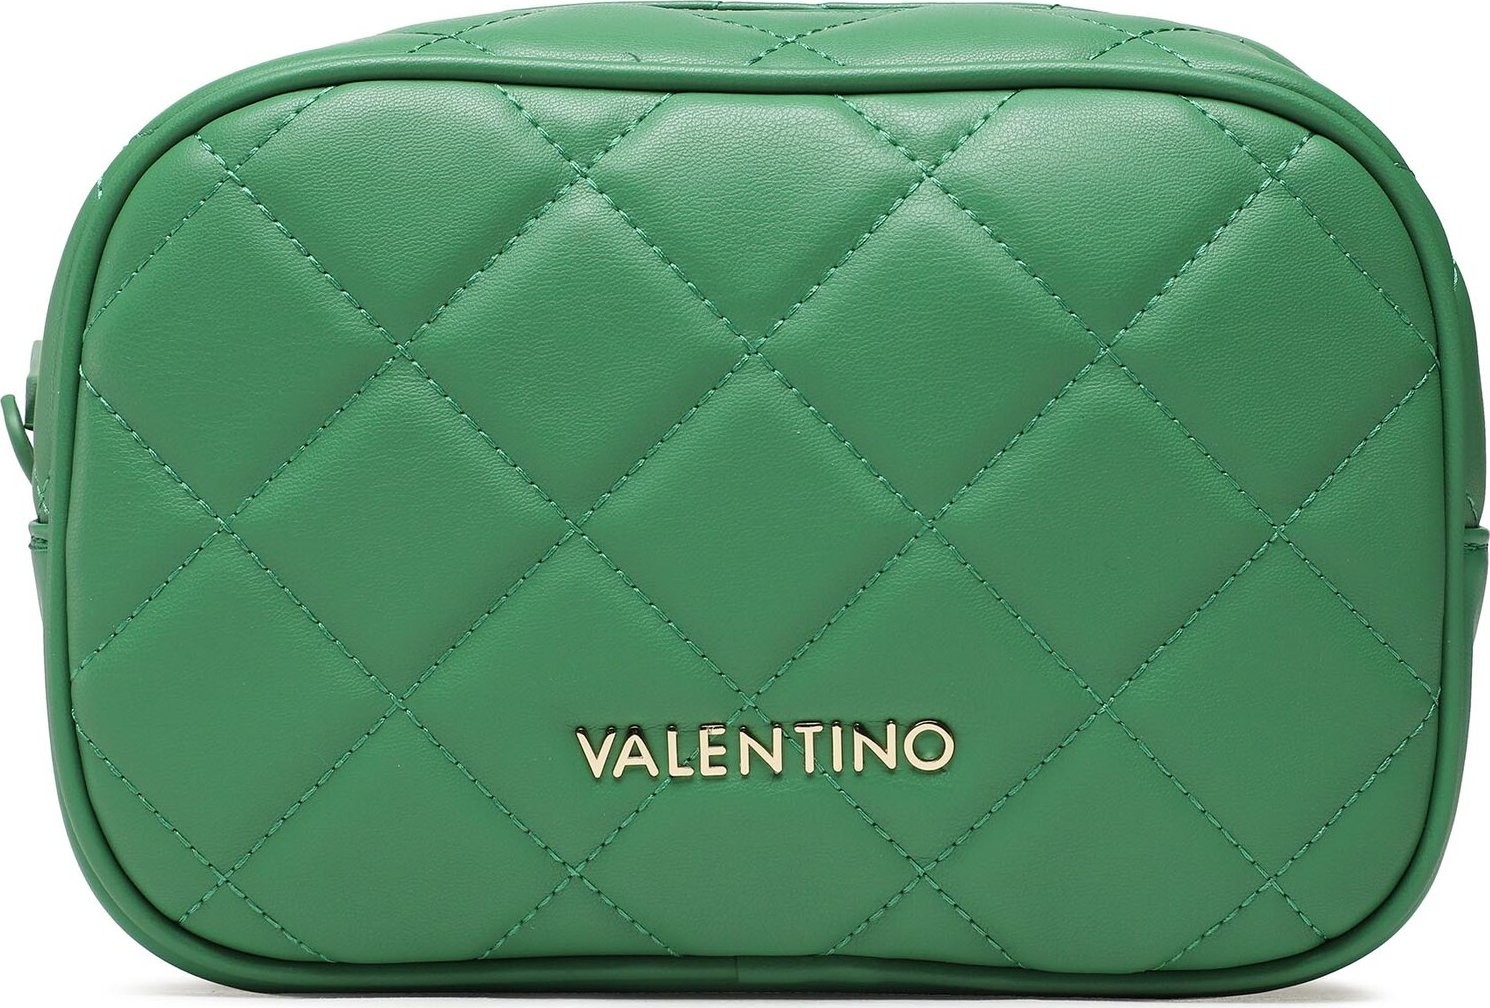 Kosmetický kufřík Valentino Ocarina VBE3KK538 Verde